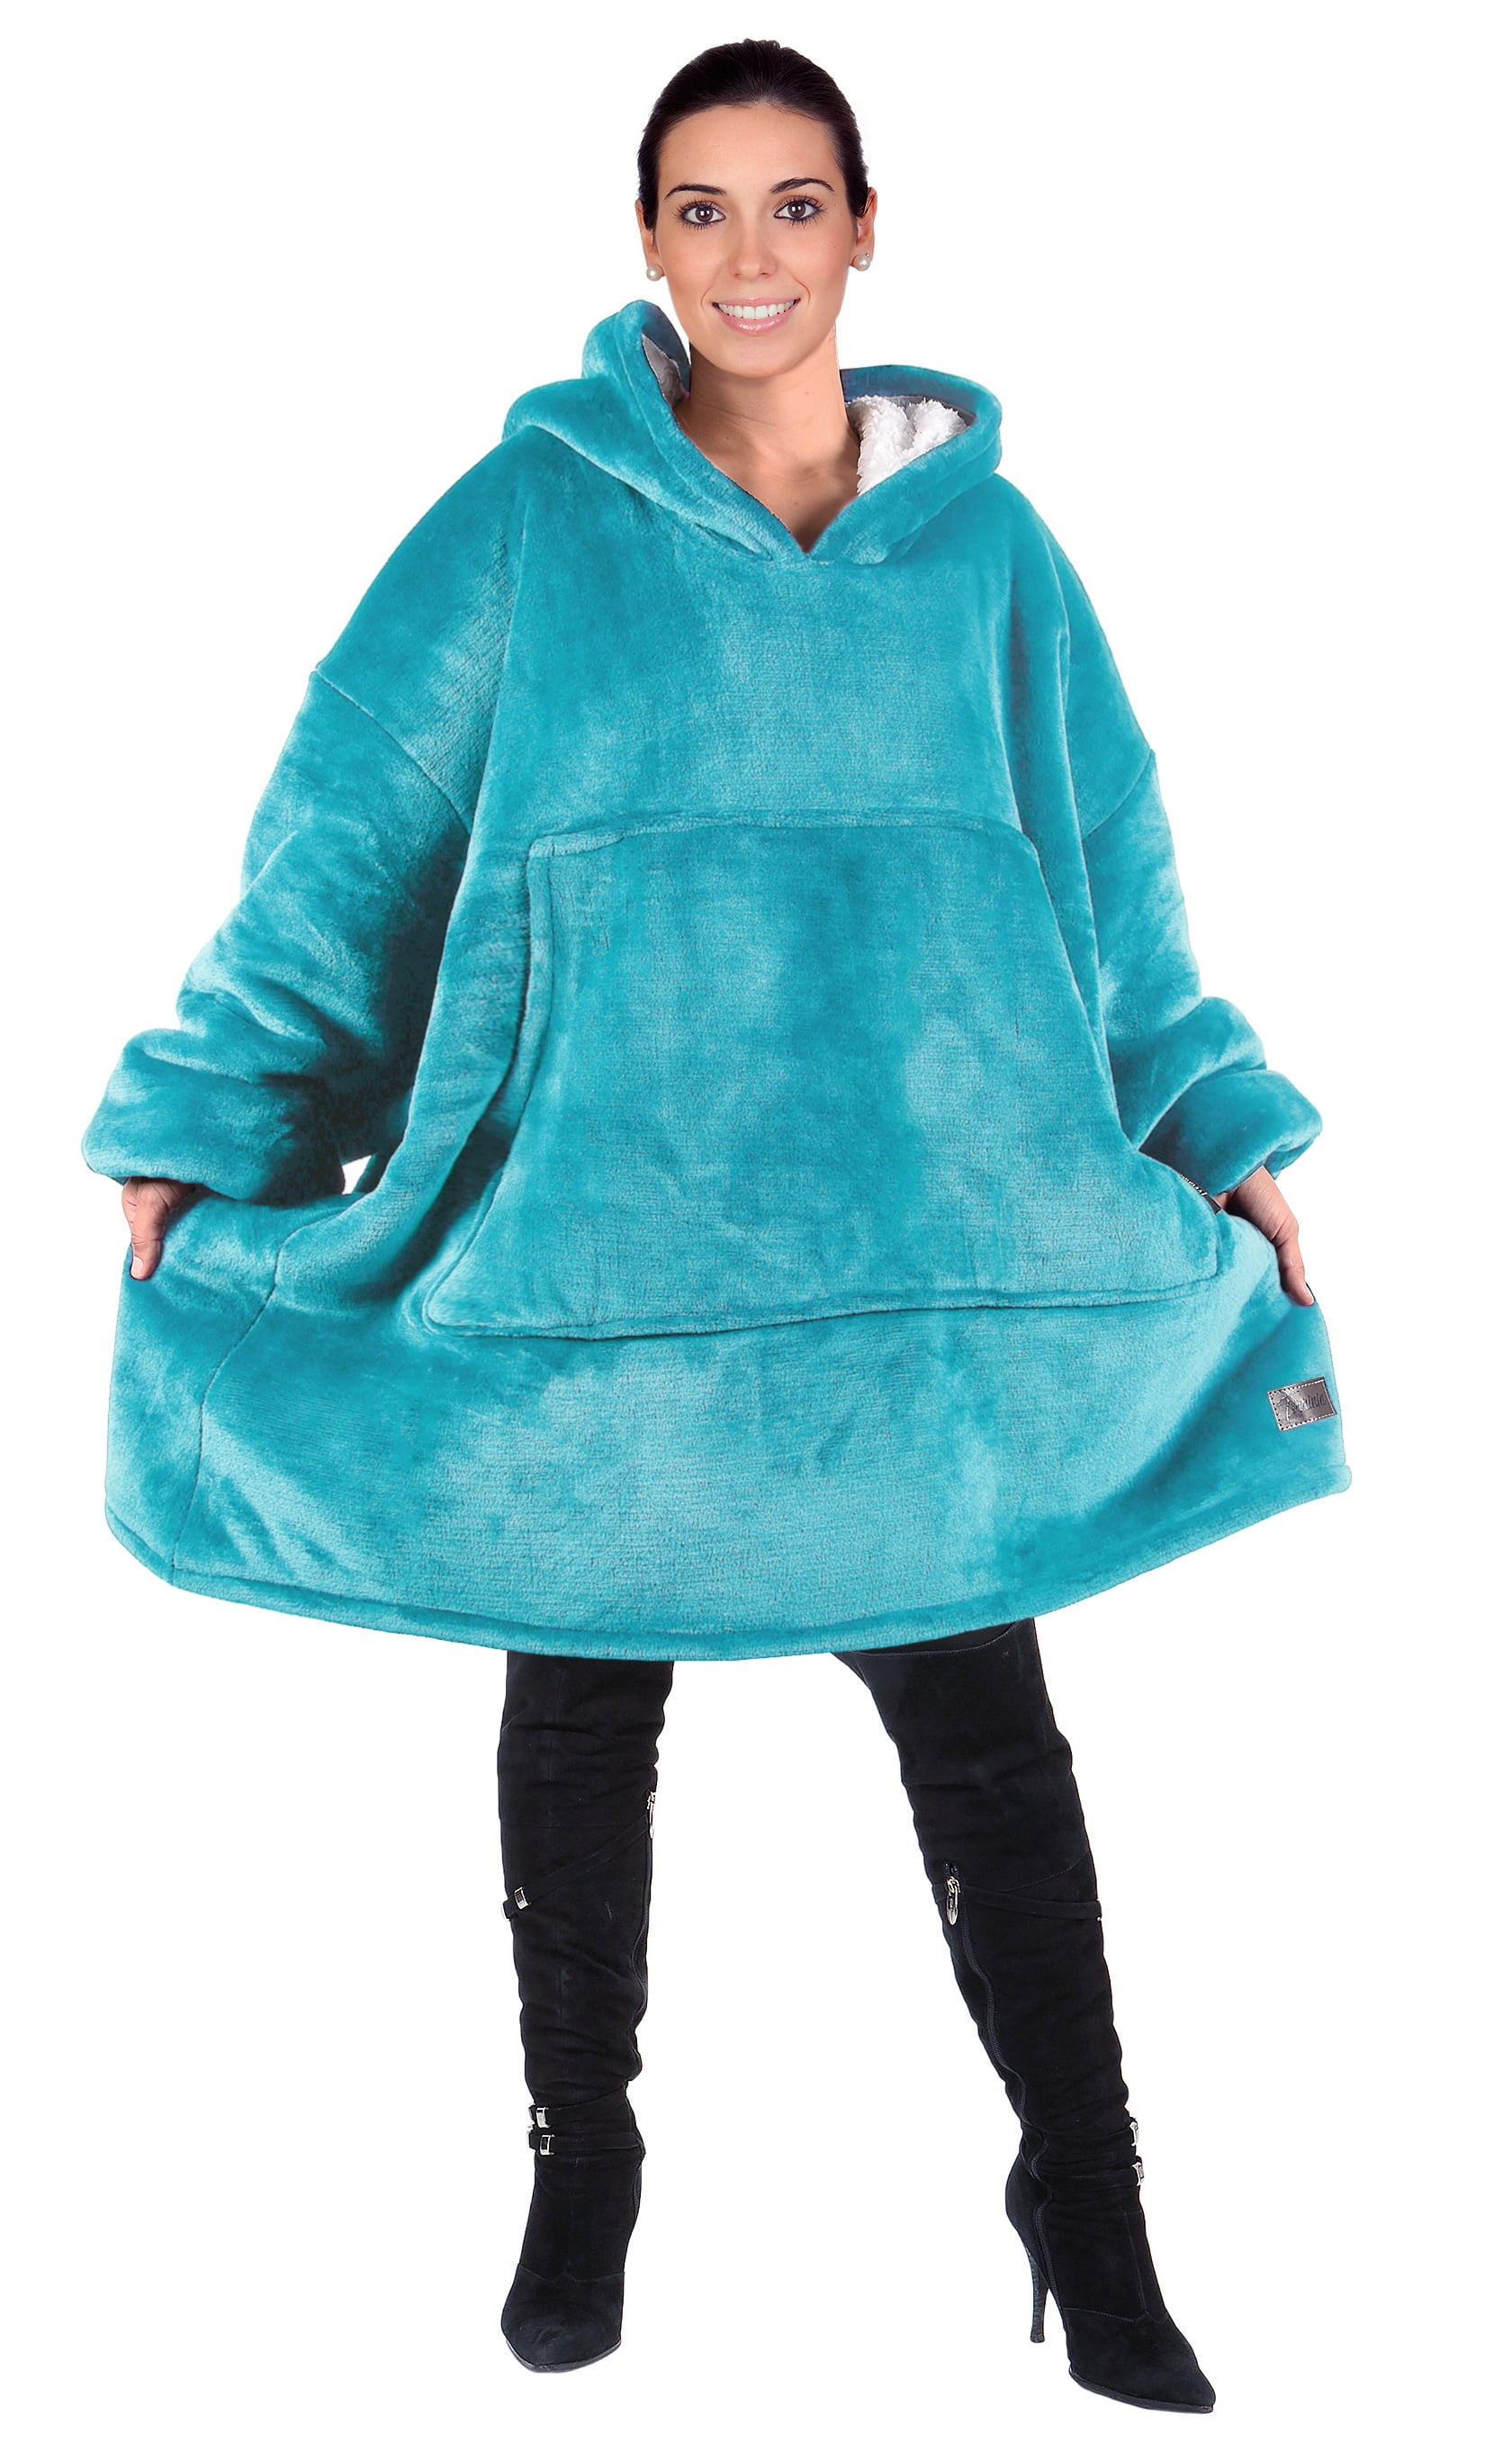 Ultra Soft Teddy Sherpa Fleece Sweatshirt for Women Men Adult Kid Oversized Blanket Hoodie with Gaint Pocket 